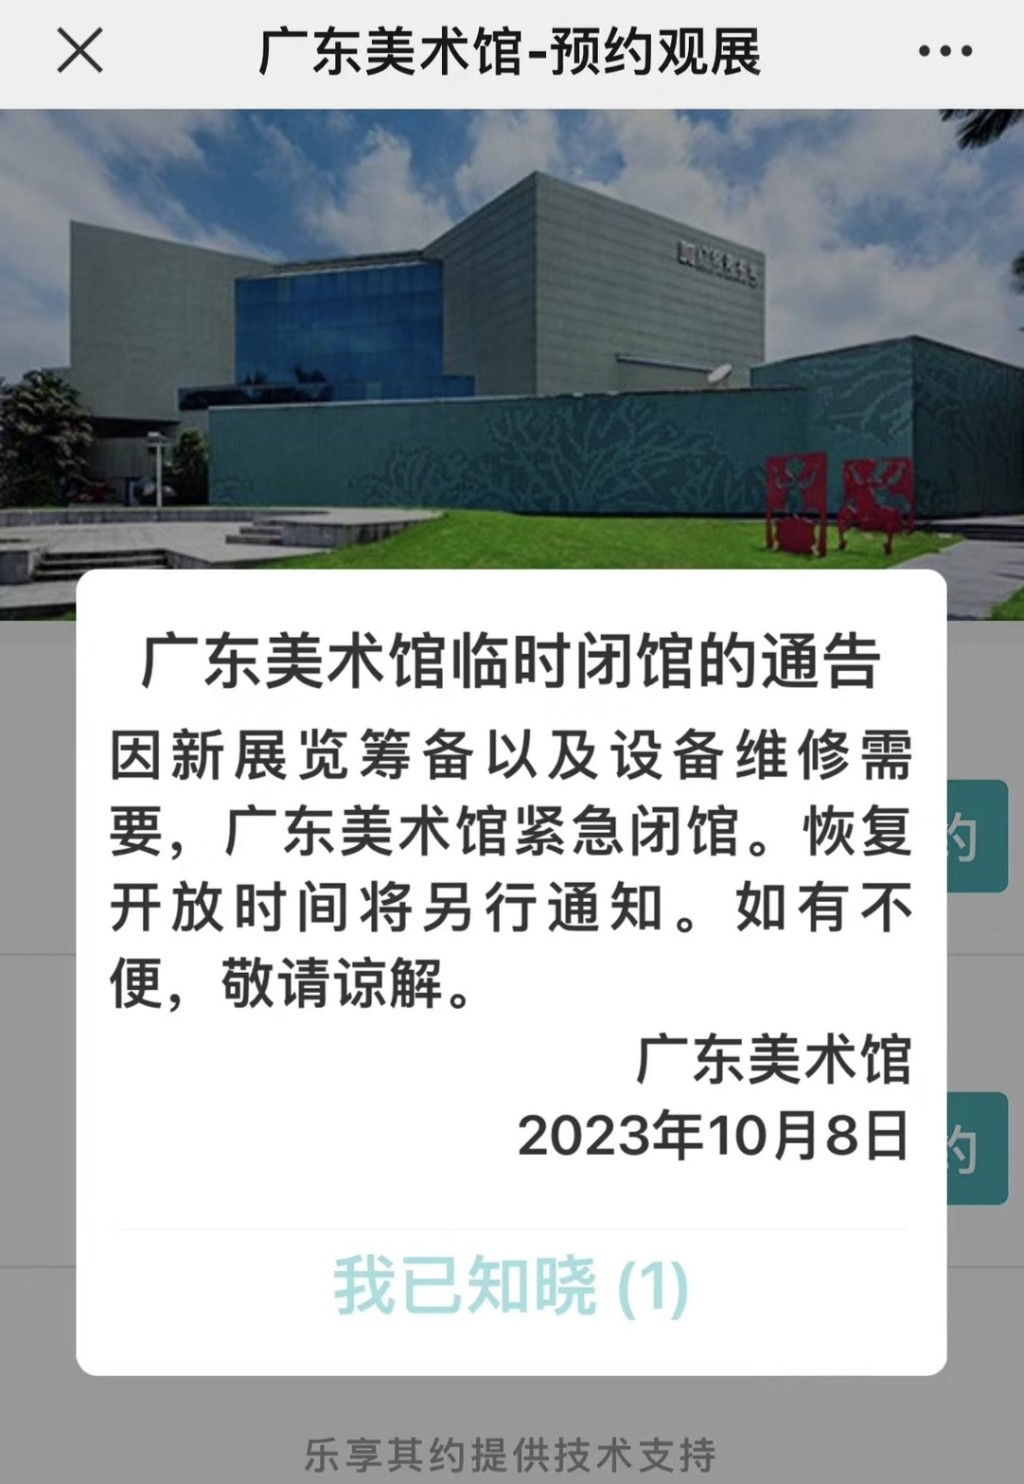 當天事發後廣東美術館宣布緊急閉館。